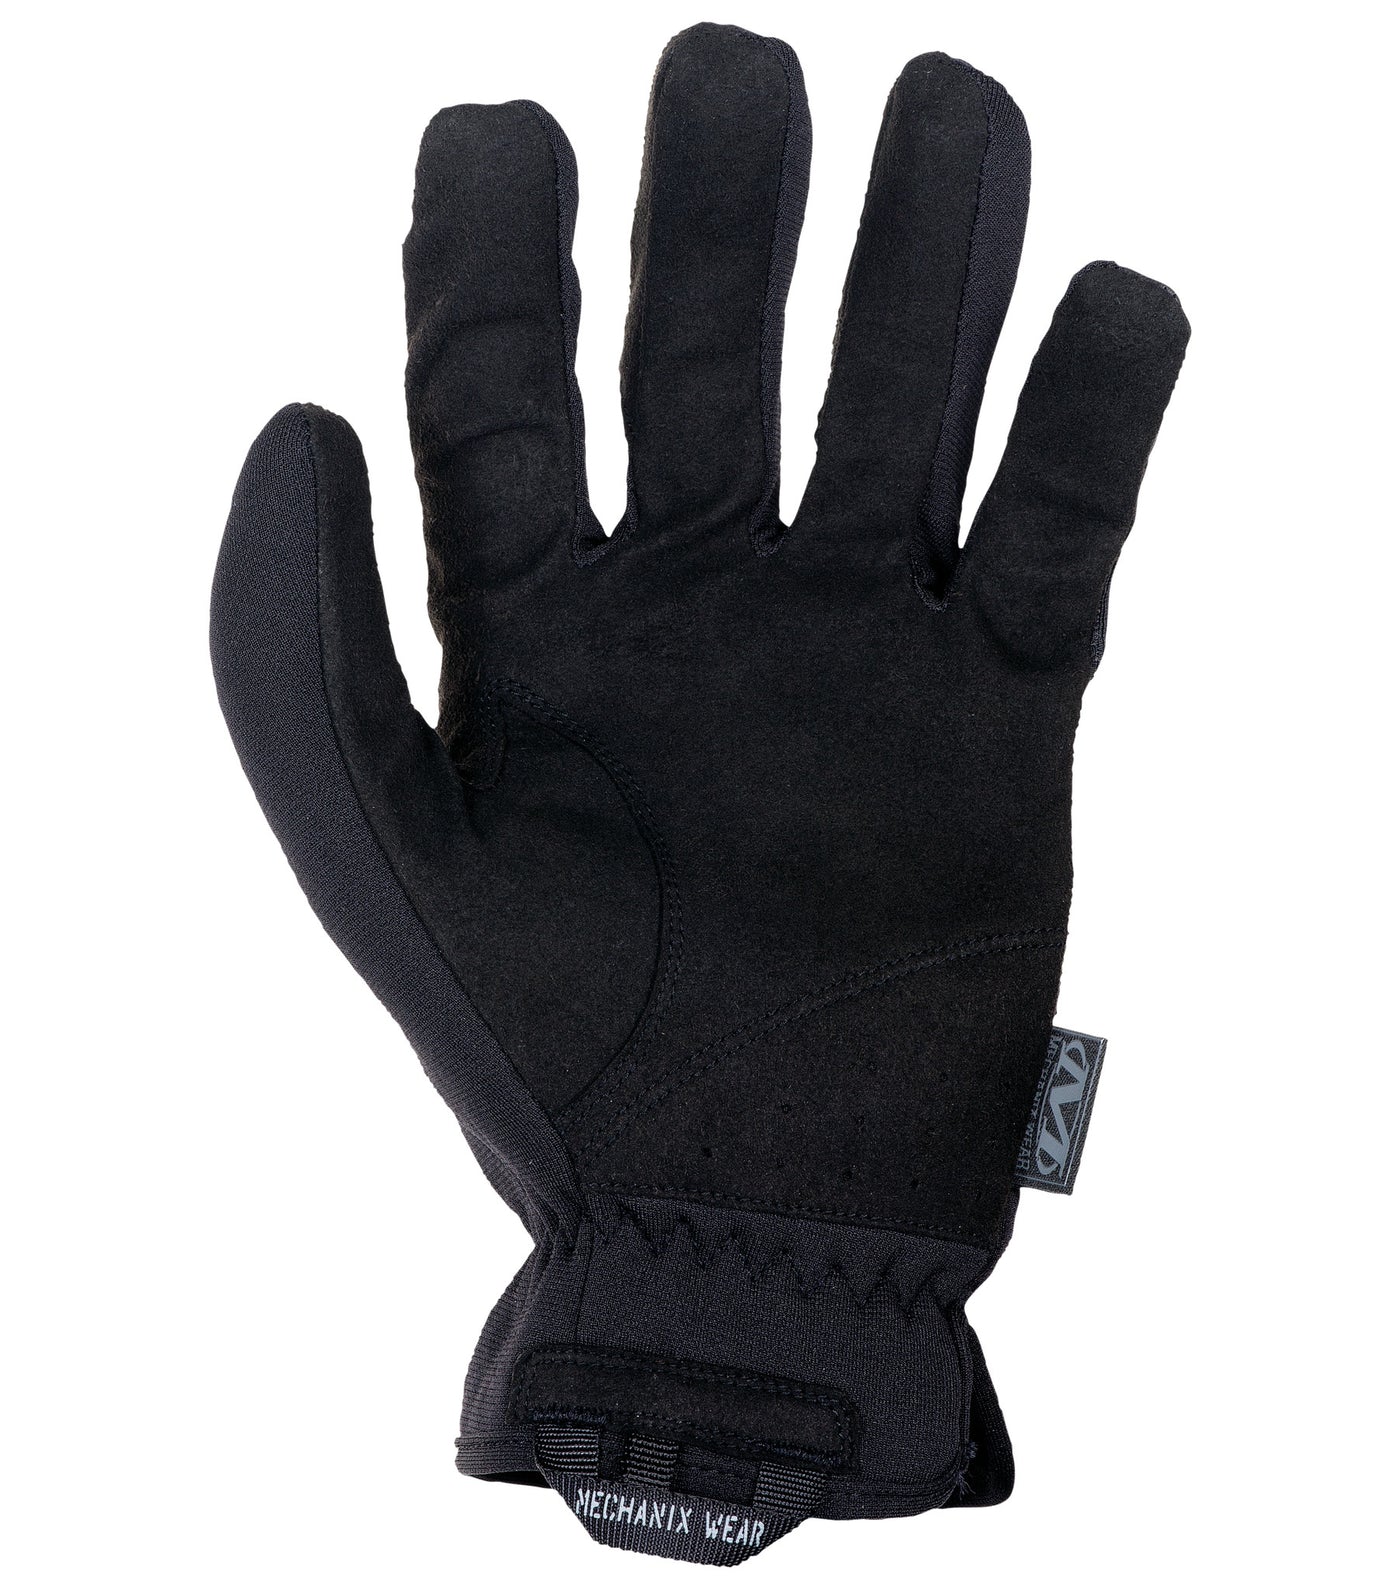 Mechanix Wear, FastFit Glove, Secure Fit, Elastic Cuff